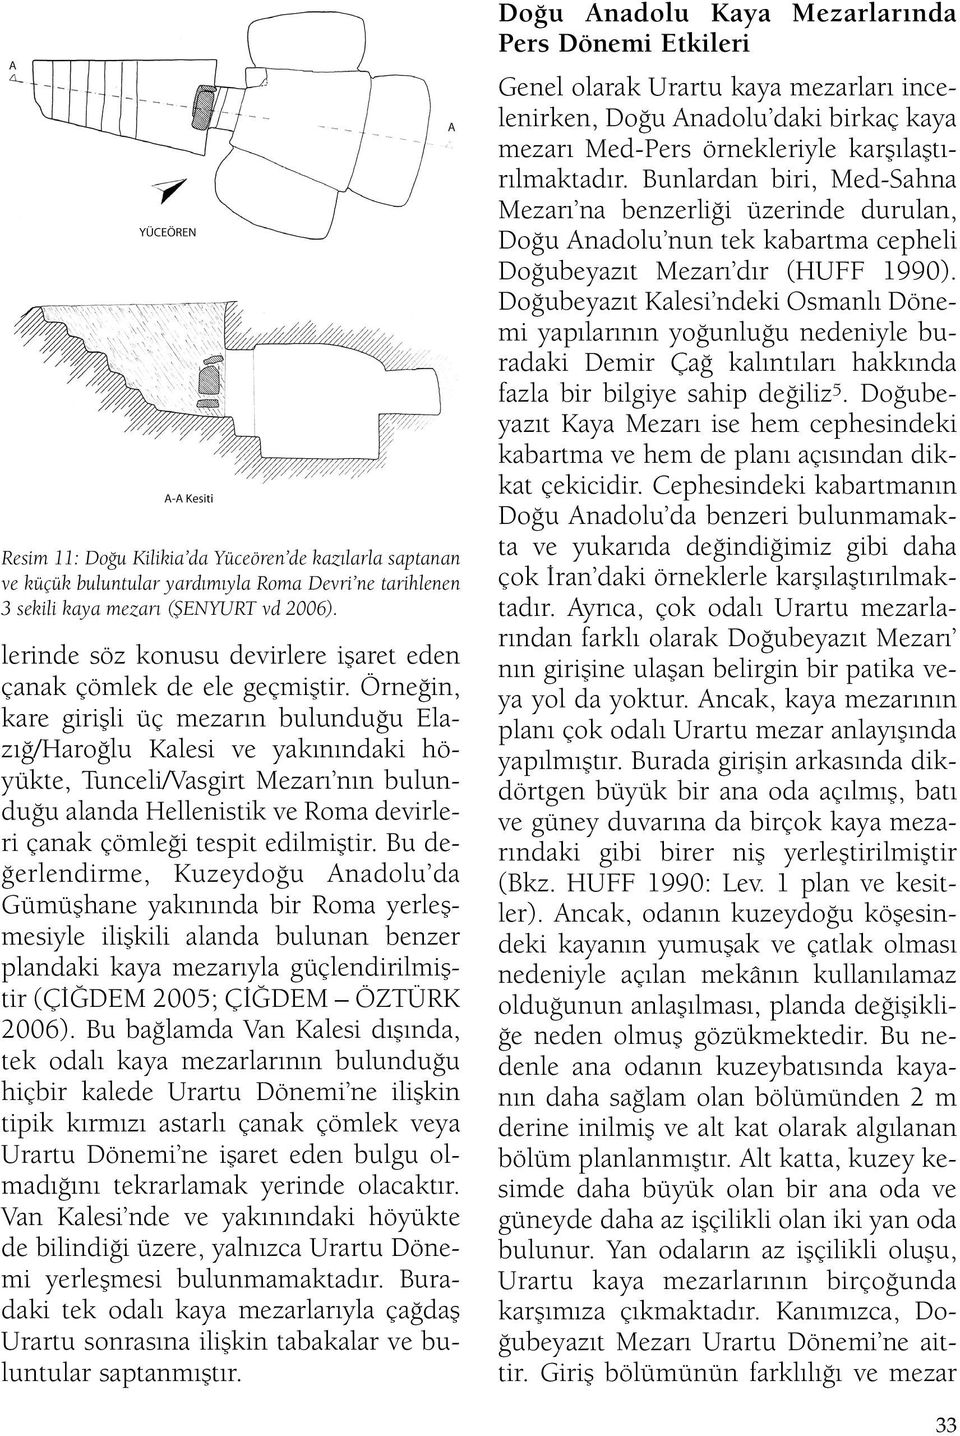 Örneğin, kare girişli üç mezarın bulunduğu Elazığ/Haroğlu Kalesi ve yakınındaki höyükte, Tunceli/Vasgirt Mezarı nın bulunduğu alanda Hellenistik ve Roma devirleri çanak çömleği tespit edilmiştir.